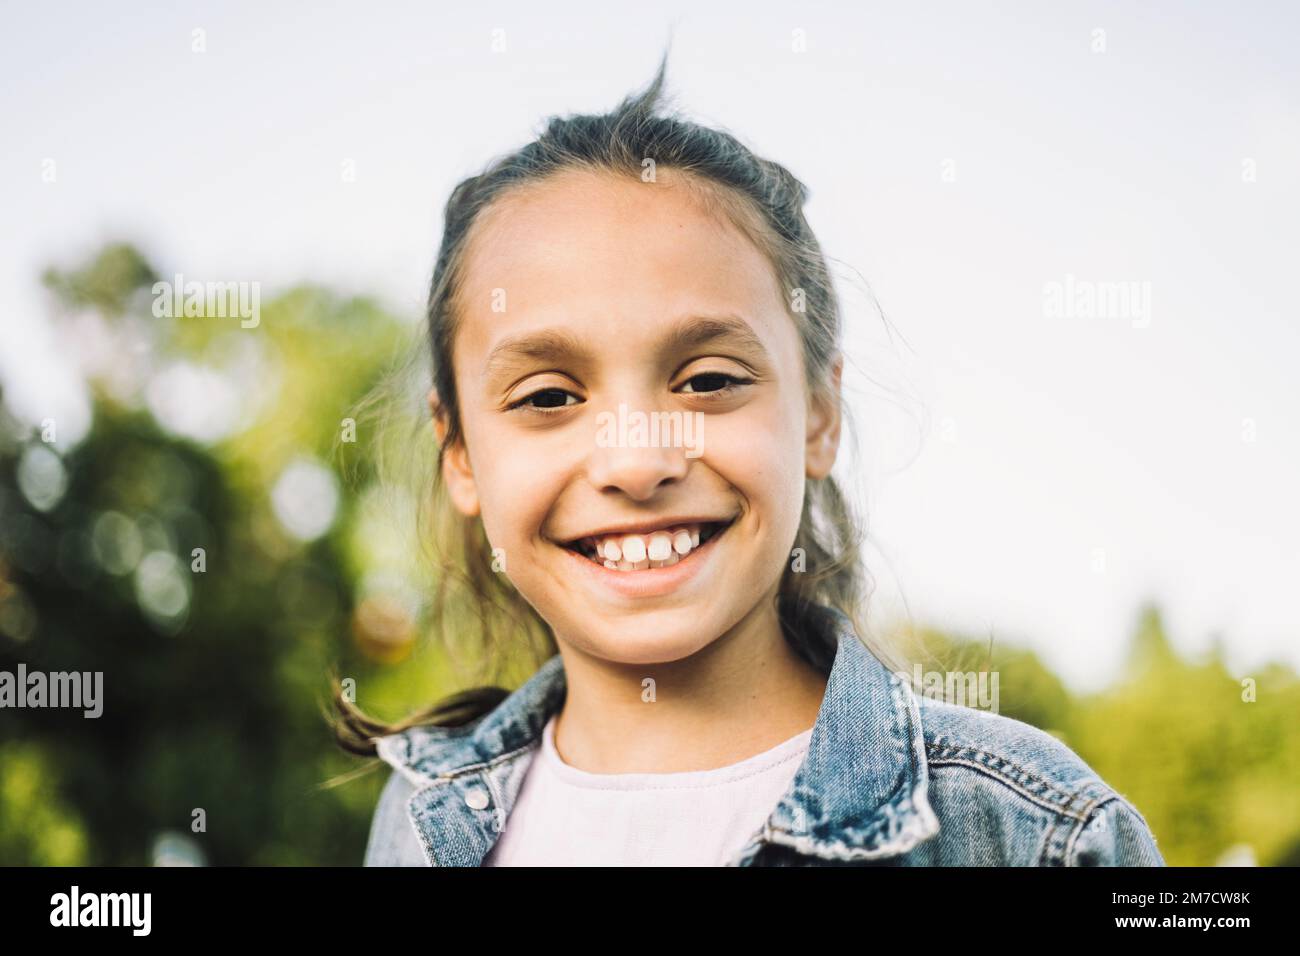 Portrait d'une fille heureuse avec un sourire éclatant Banque D'Images